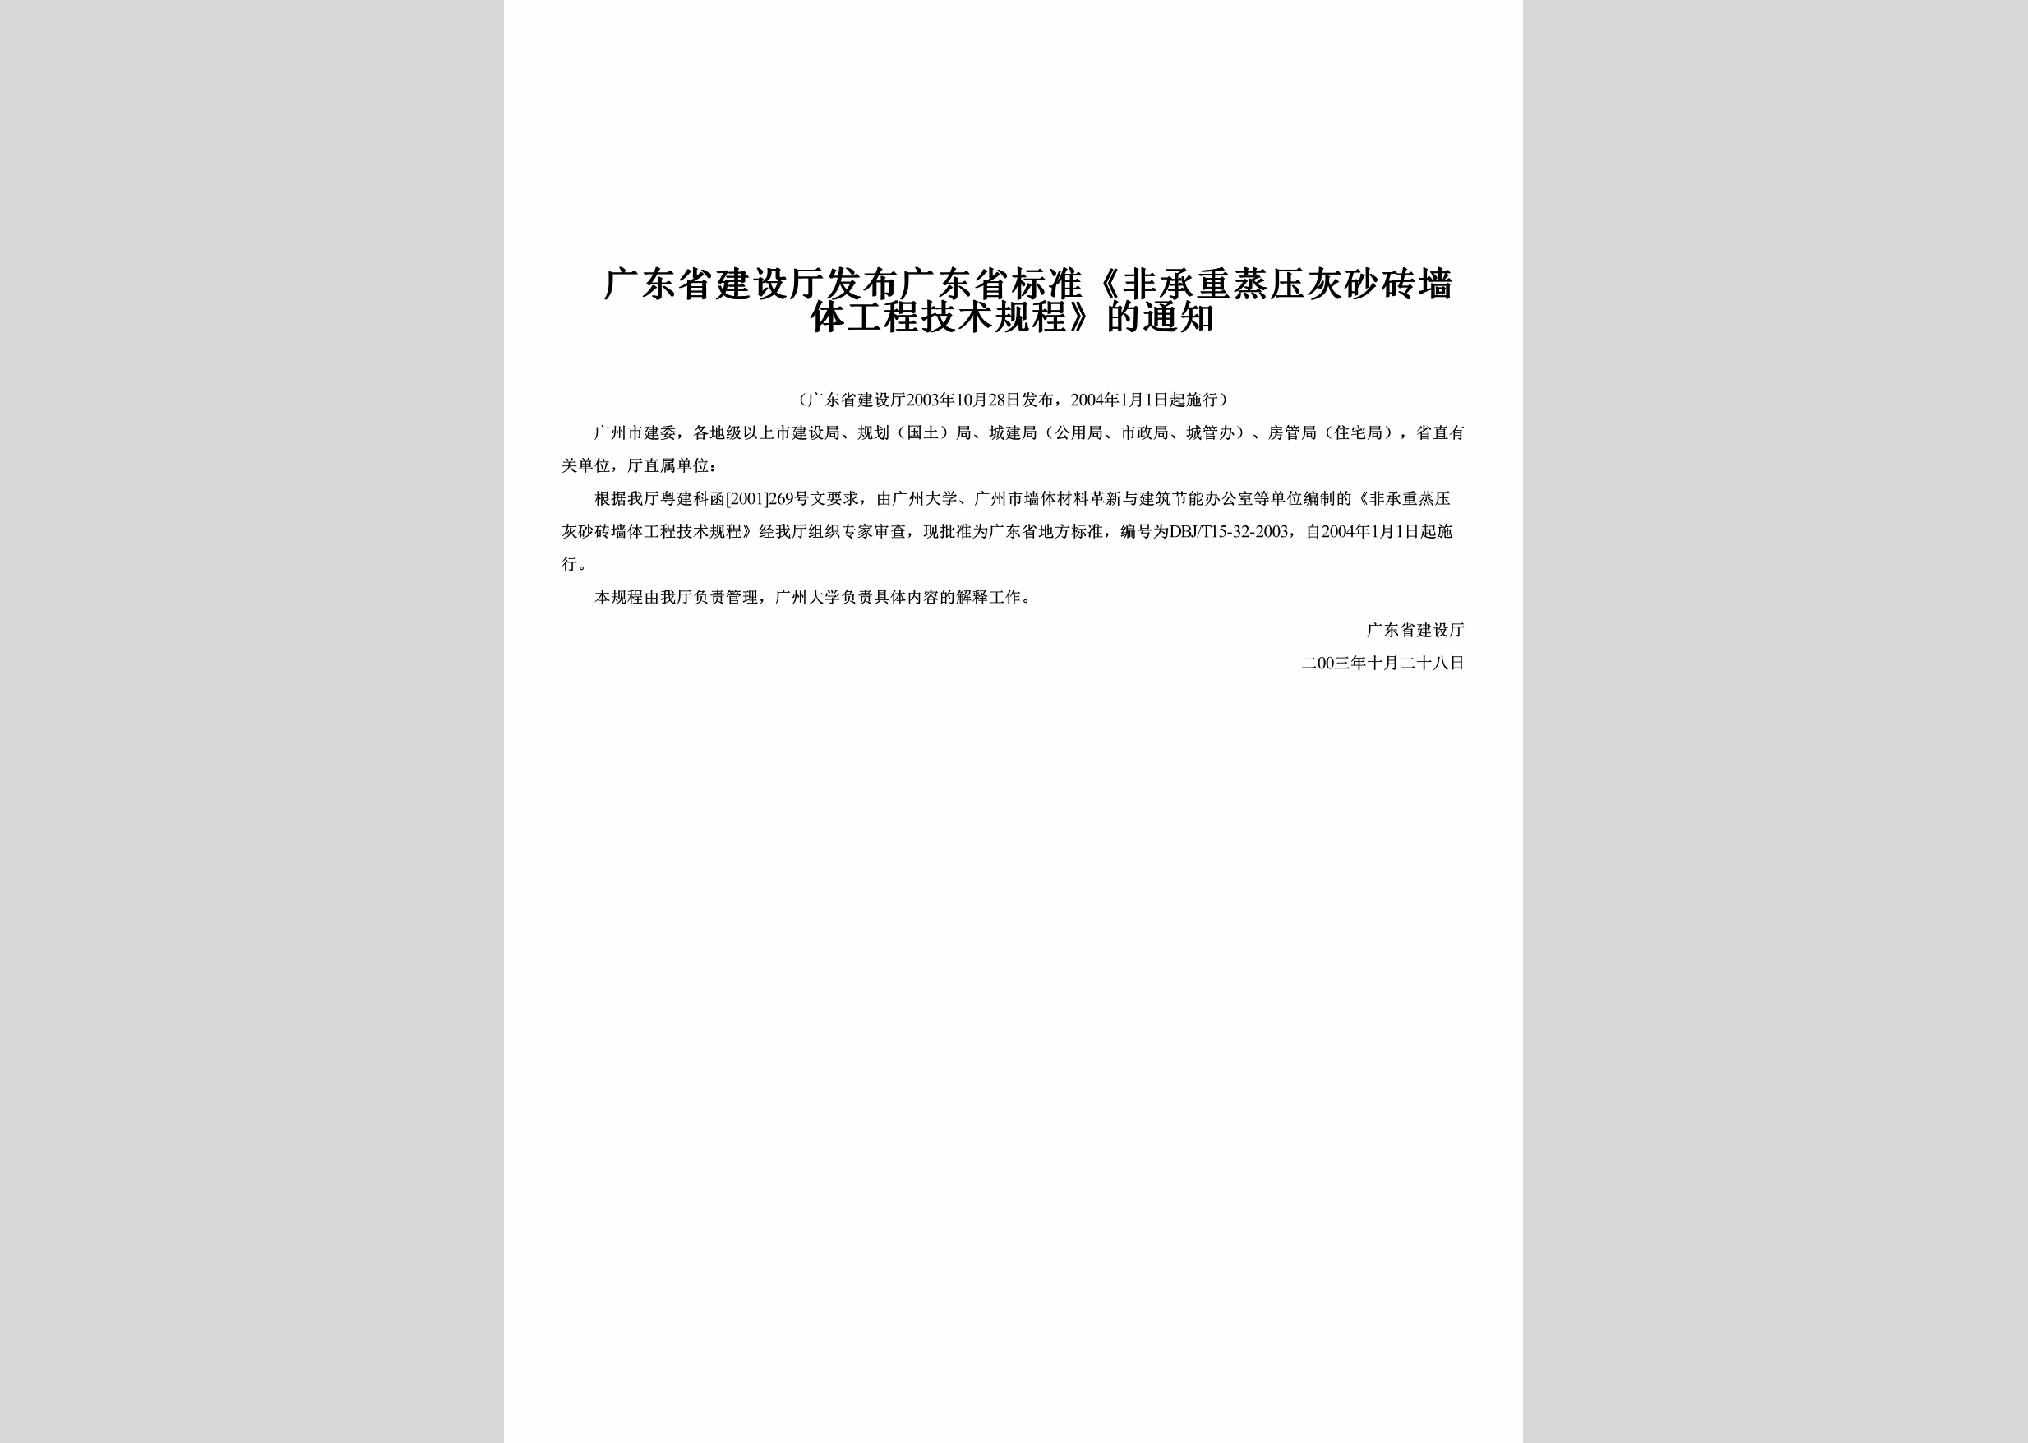 GD-FBGDSBZF-2003：发布广东省标准《非承重蒸压灰砂砖墙体工程技术规程》的通知